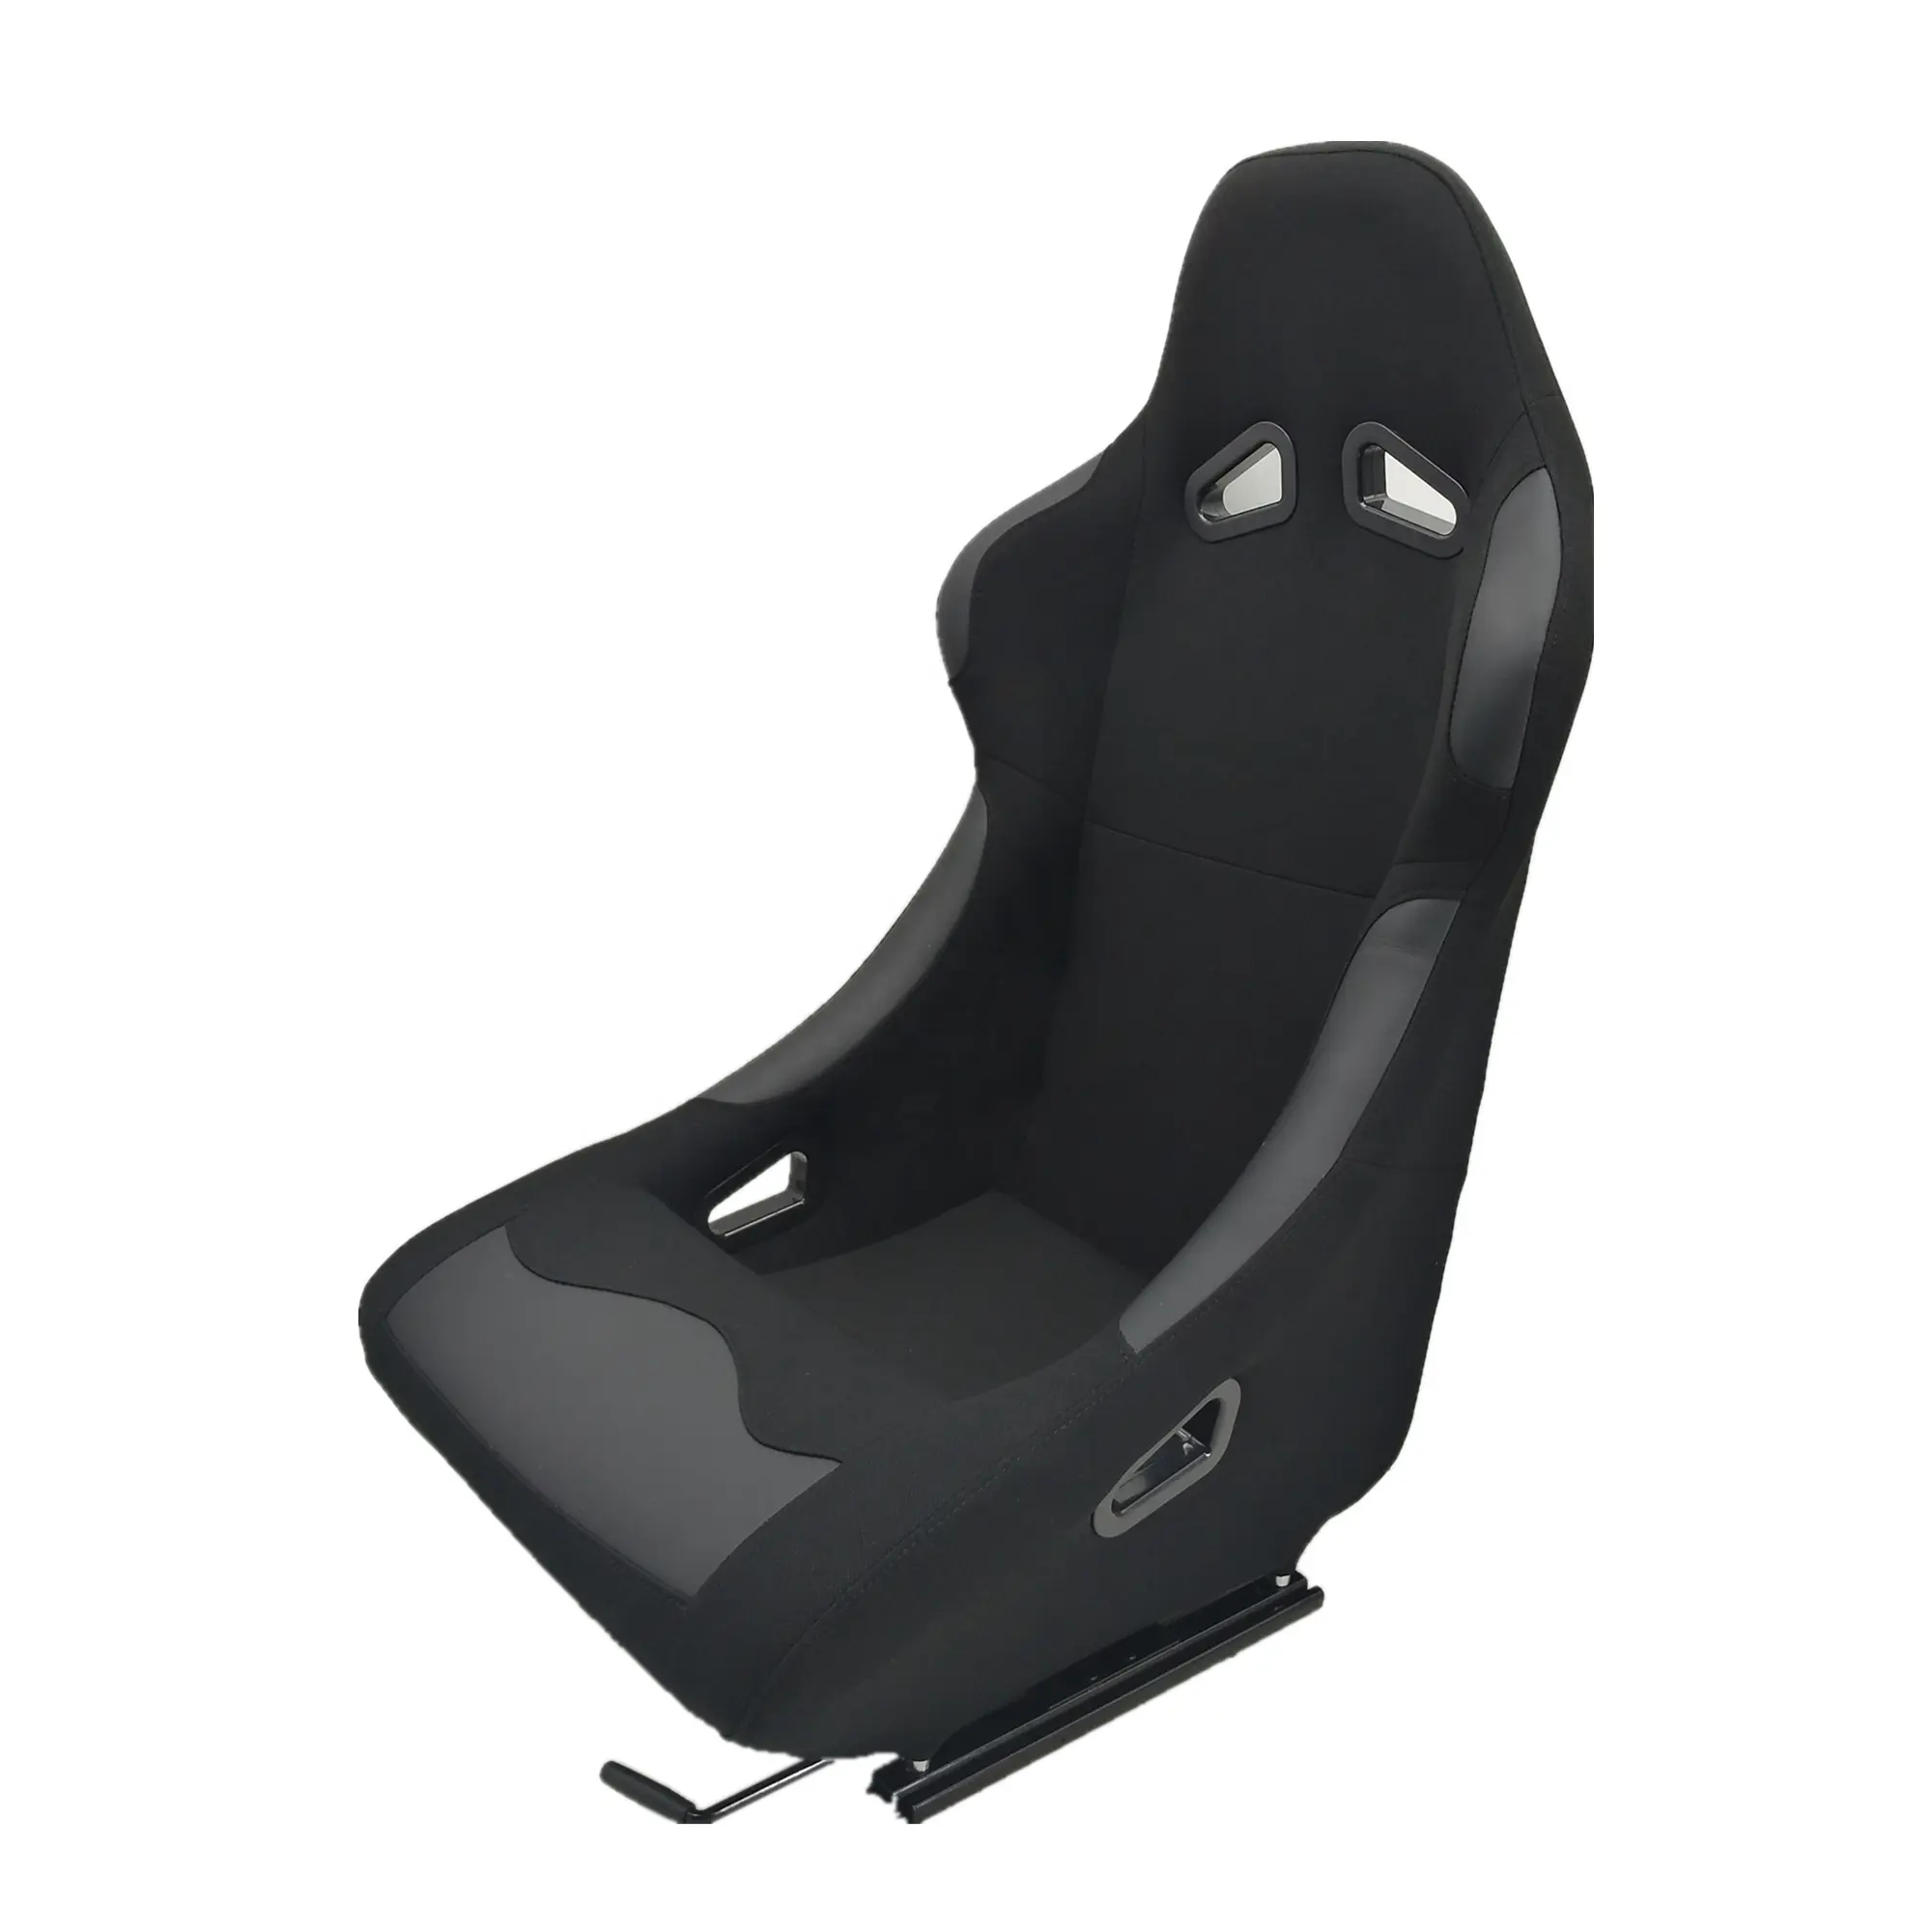 Emmer Seat Voor Racing Auto Zwarte Doek Met Enkele Slider Voor Volwassen Gebruik Sport Racing Seat